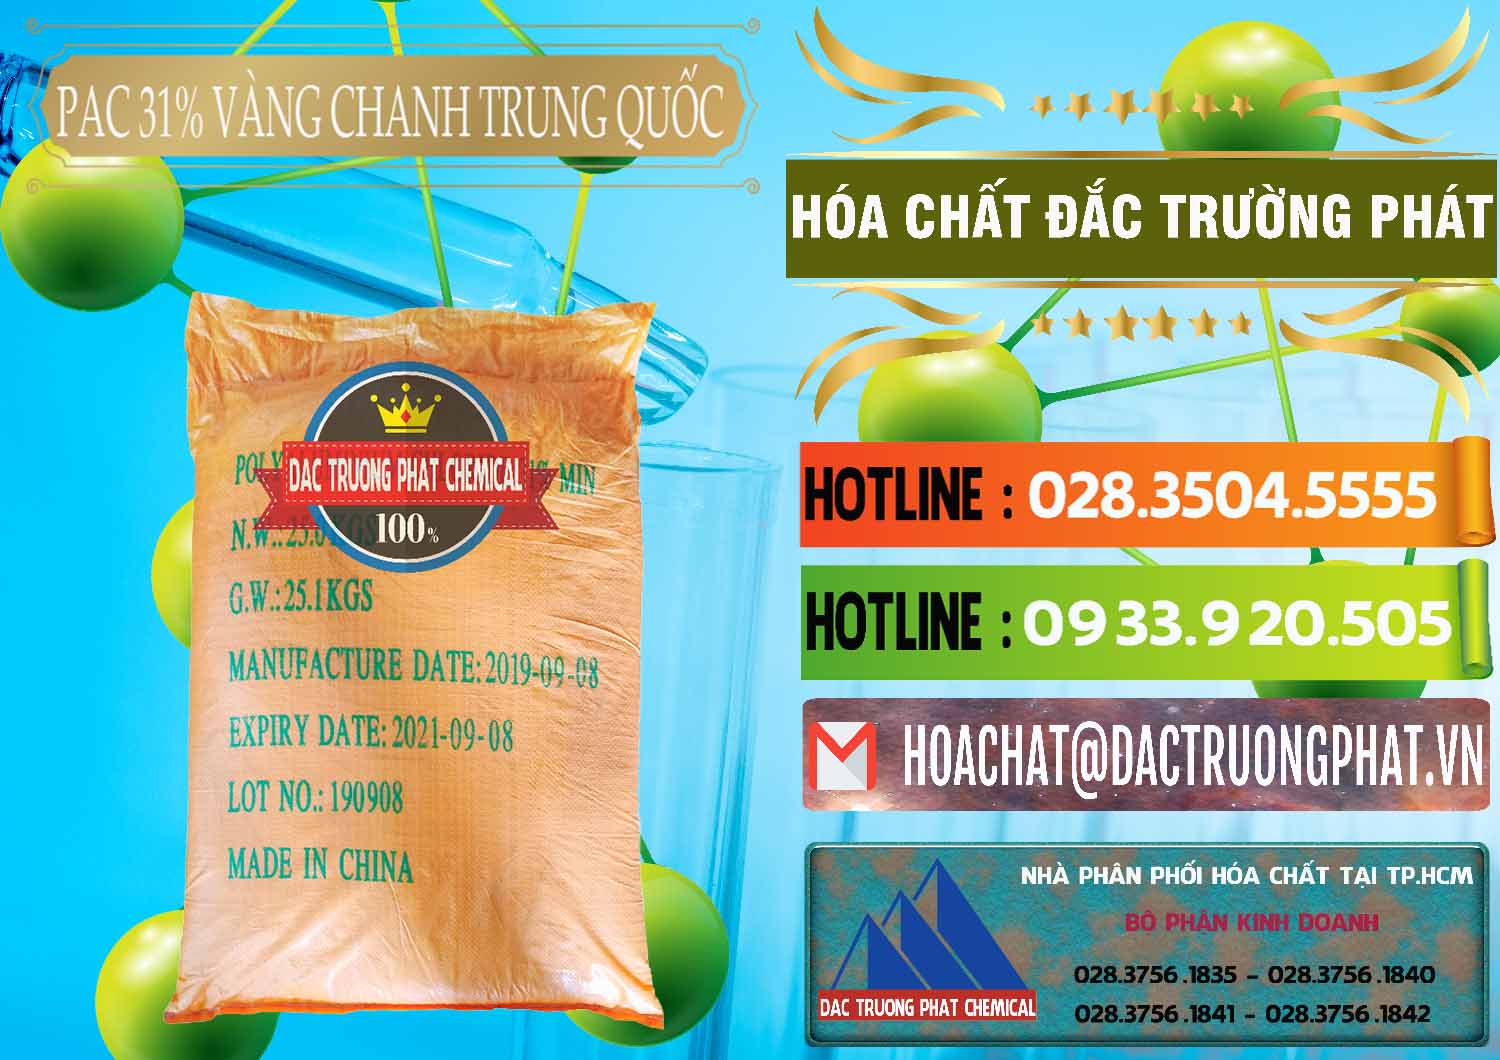 Đơn vị chuyên kinh doanh và bán PAC - Polyaluminium Chloride 28-31% Vàng Chanh Trung Quốc China - 0109 - Phân phối & cung ứng hóa chất tại TP.HCM - cungcaphoachat.com.vn